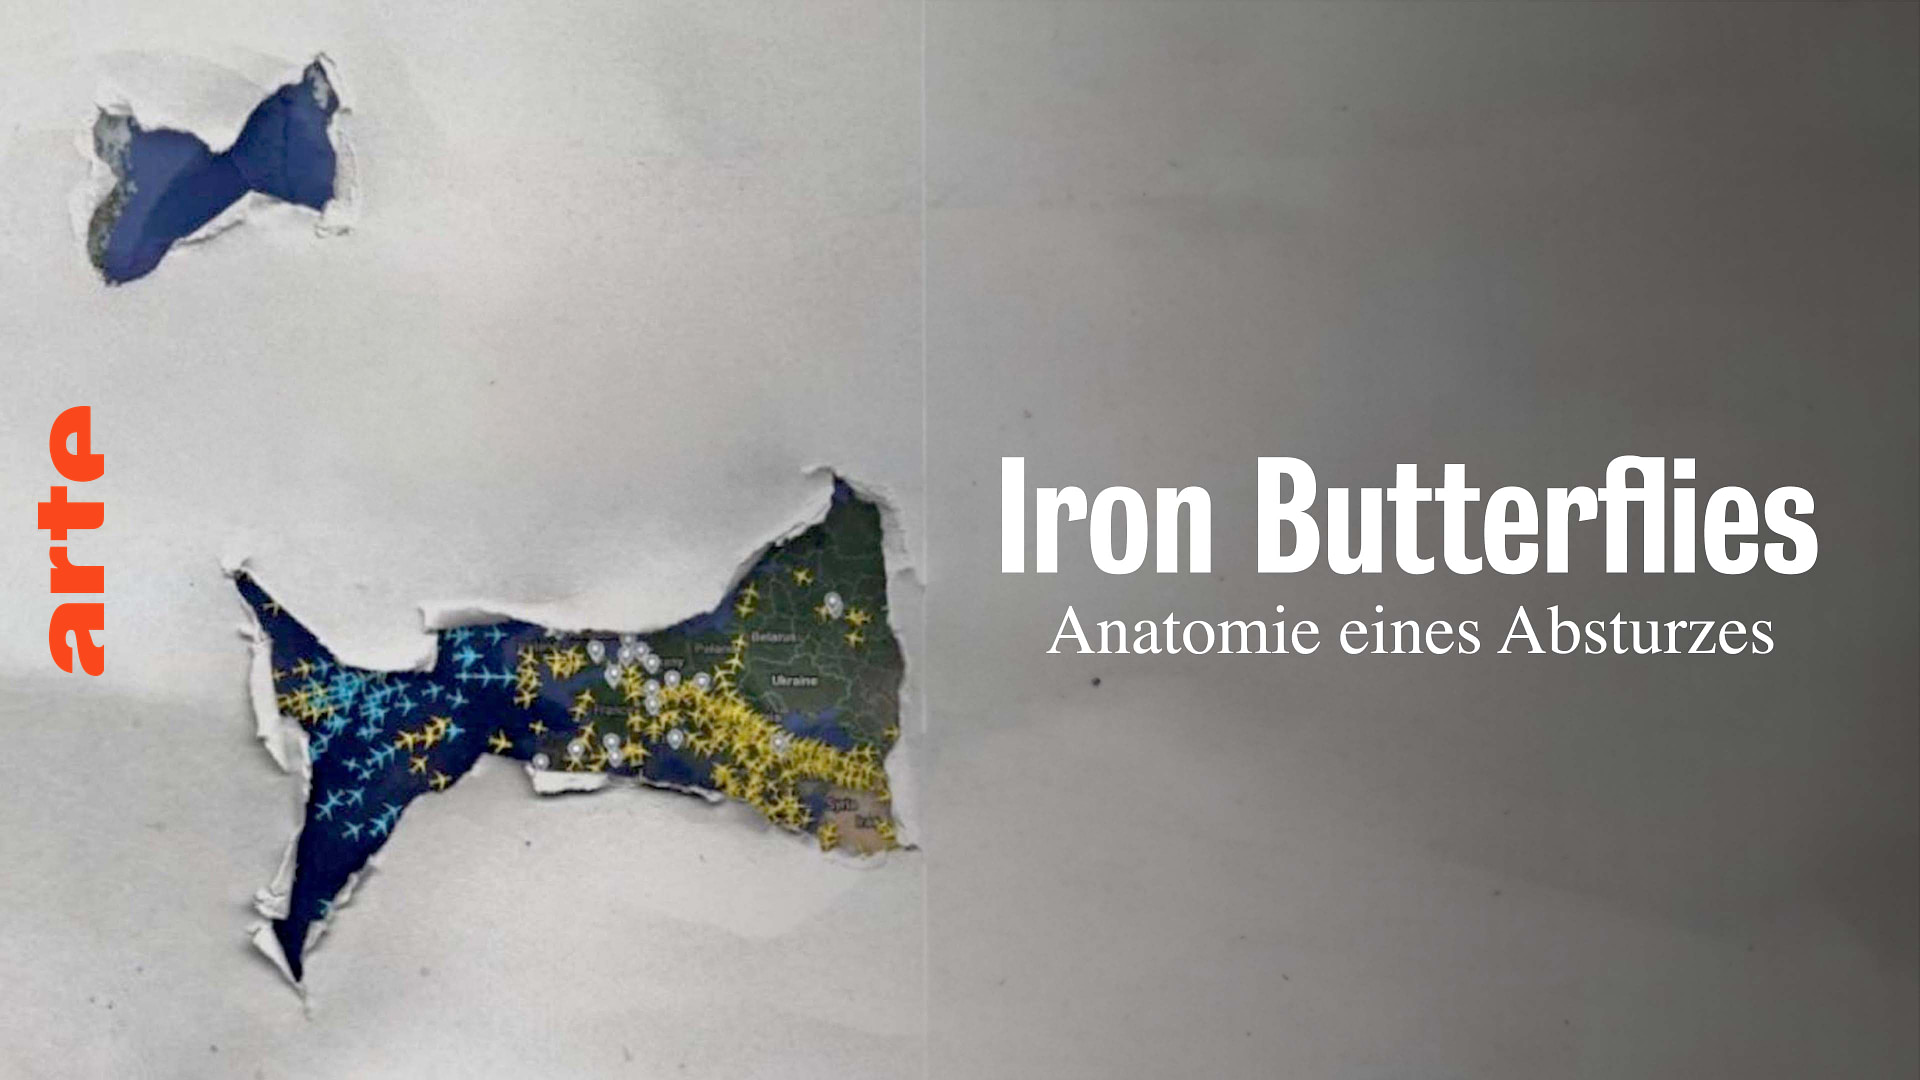 Iron Butterflies